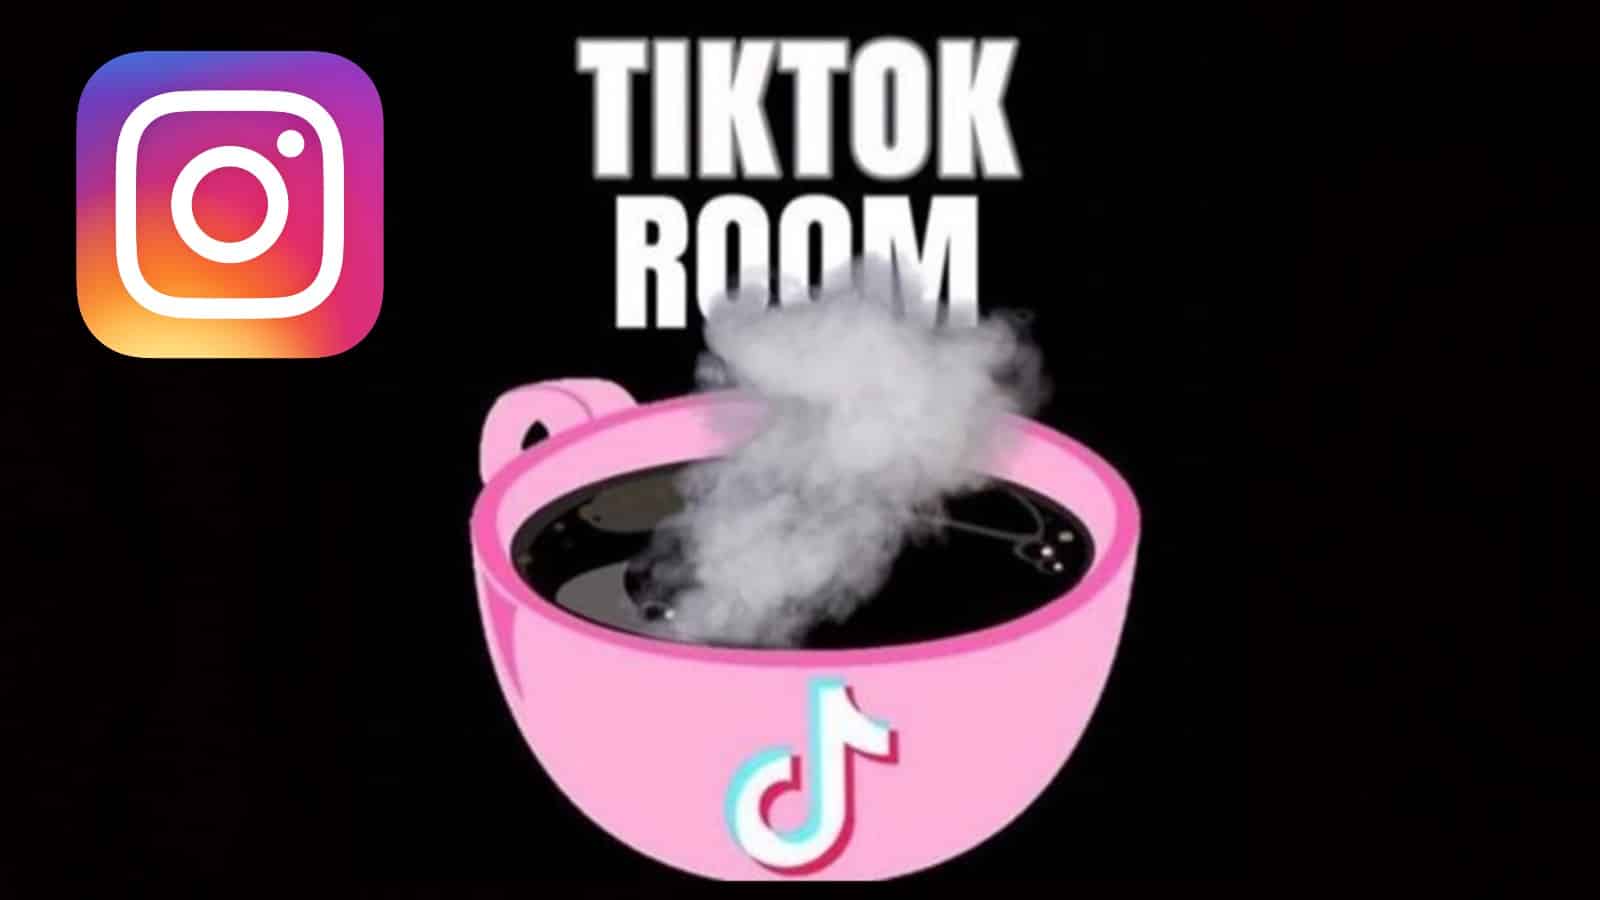 The Instagram logo next to the TikTok logo